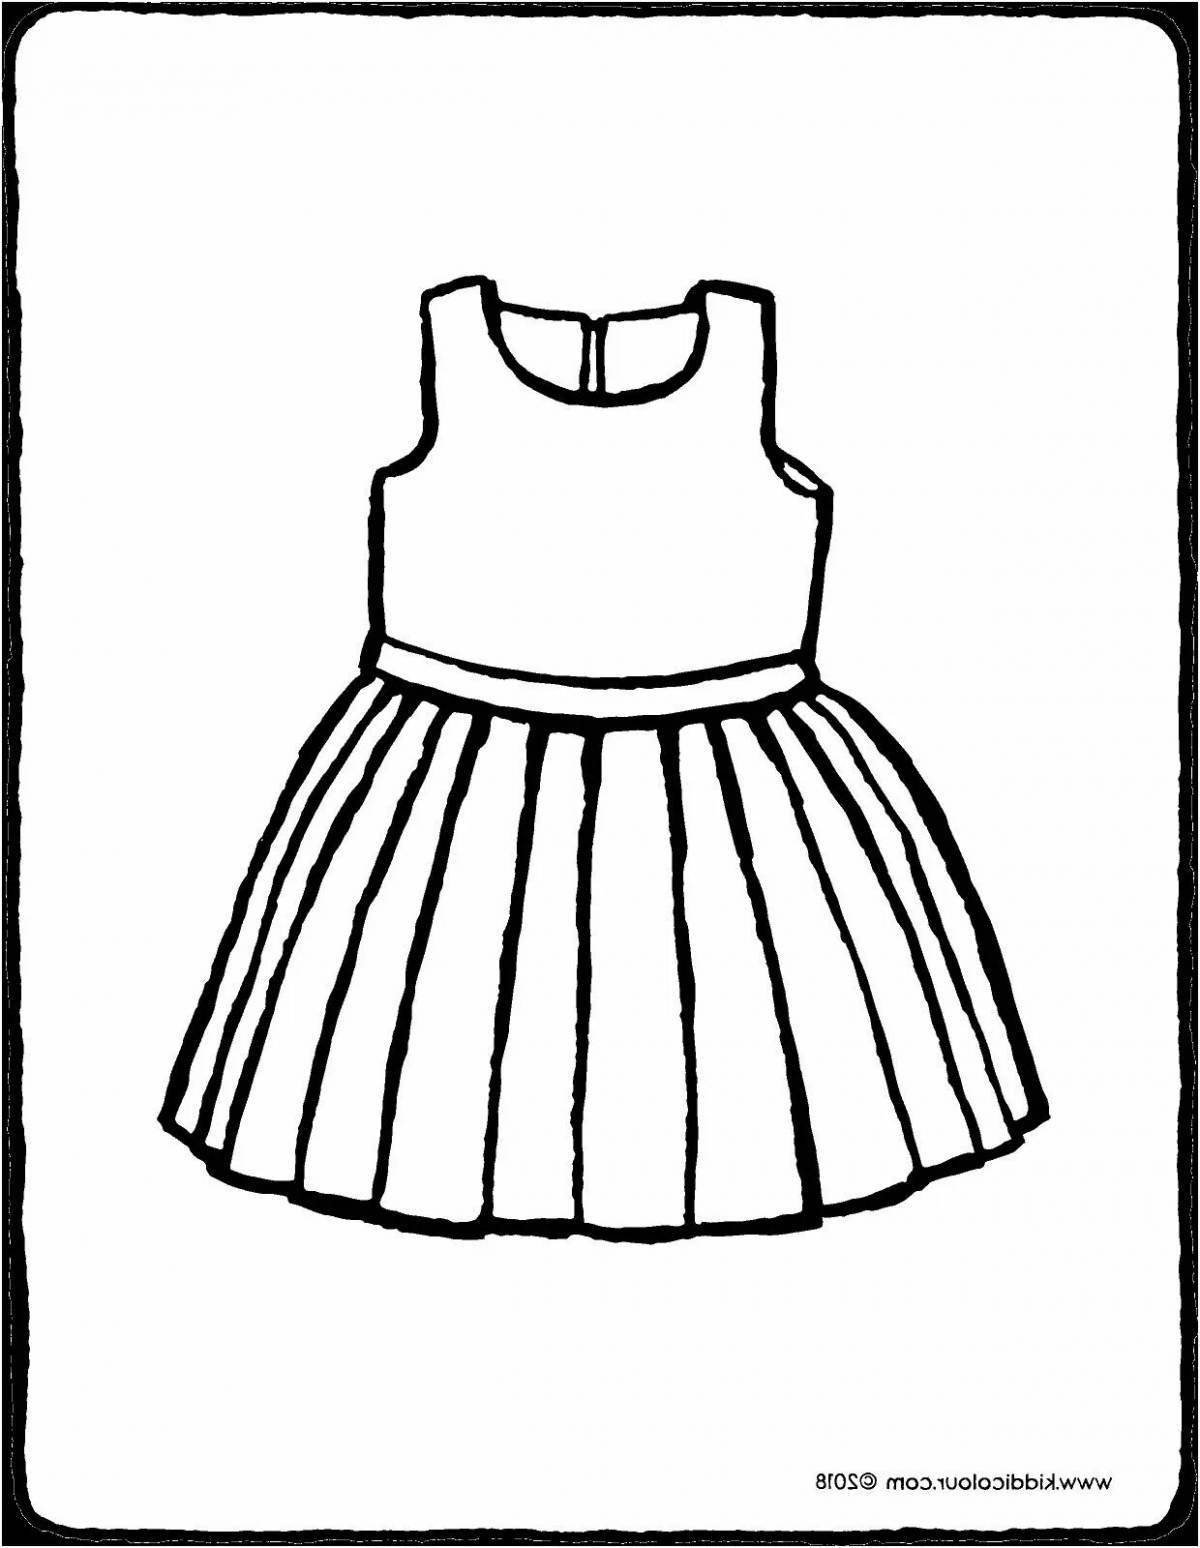 Яркое платье-раскраска для детей 4-5 лет